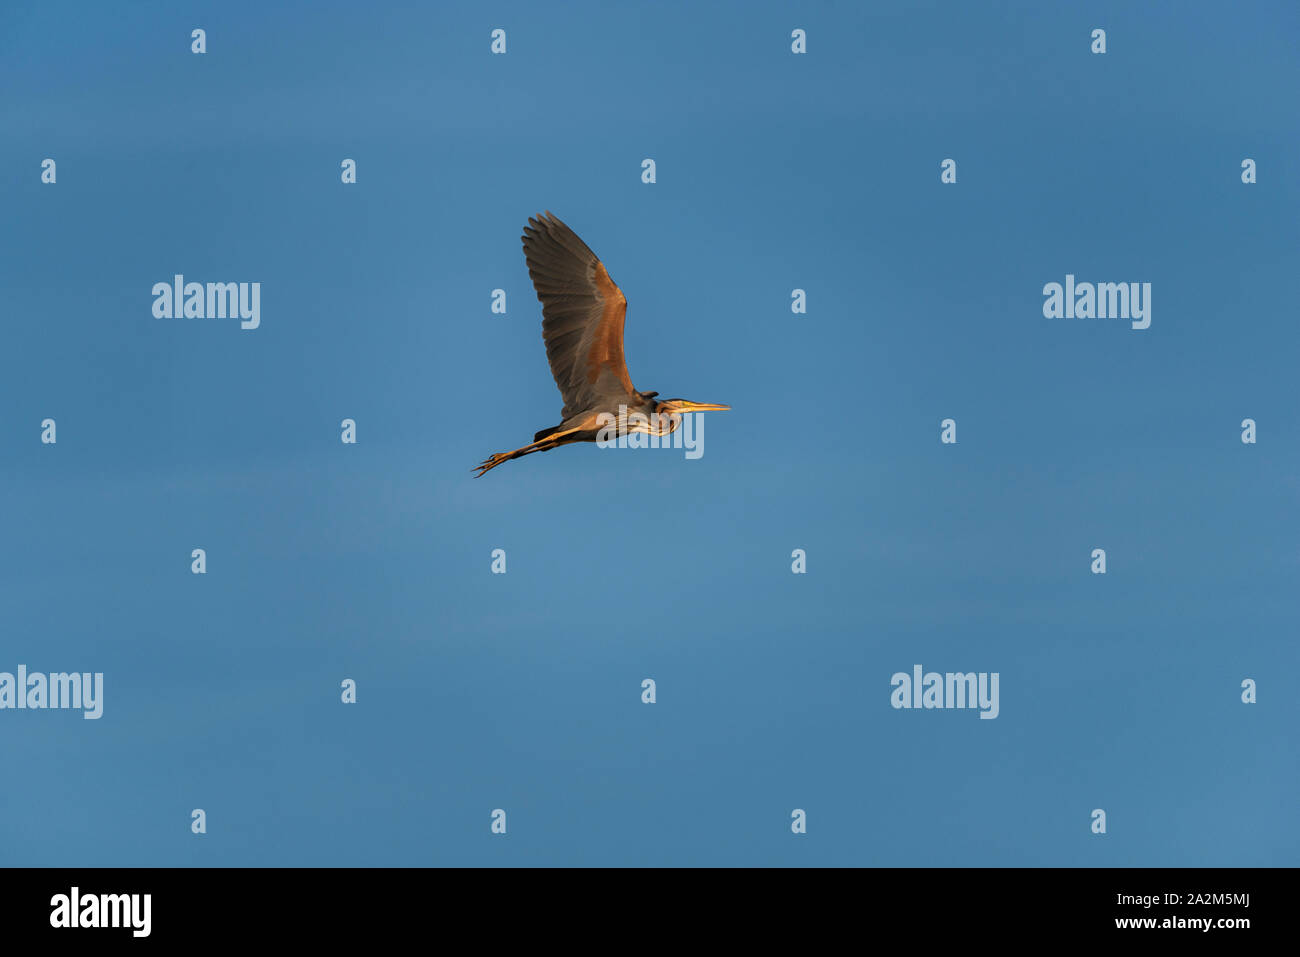 Puple heron flying Stock Photo